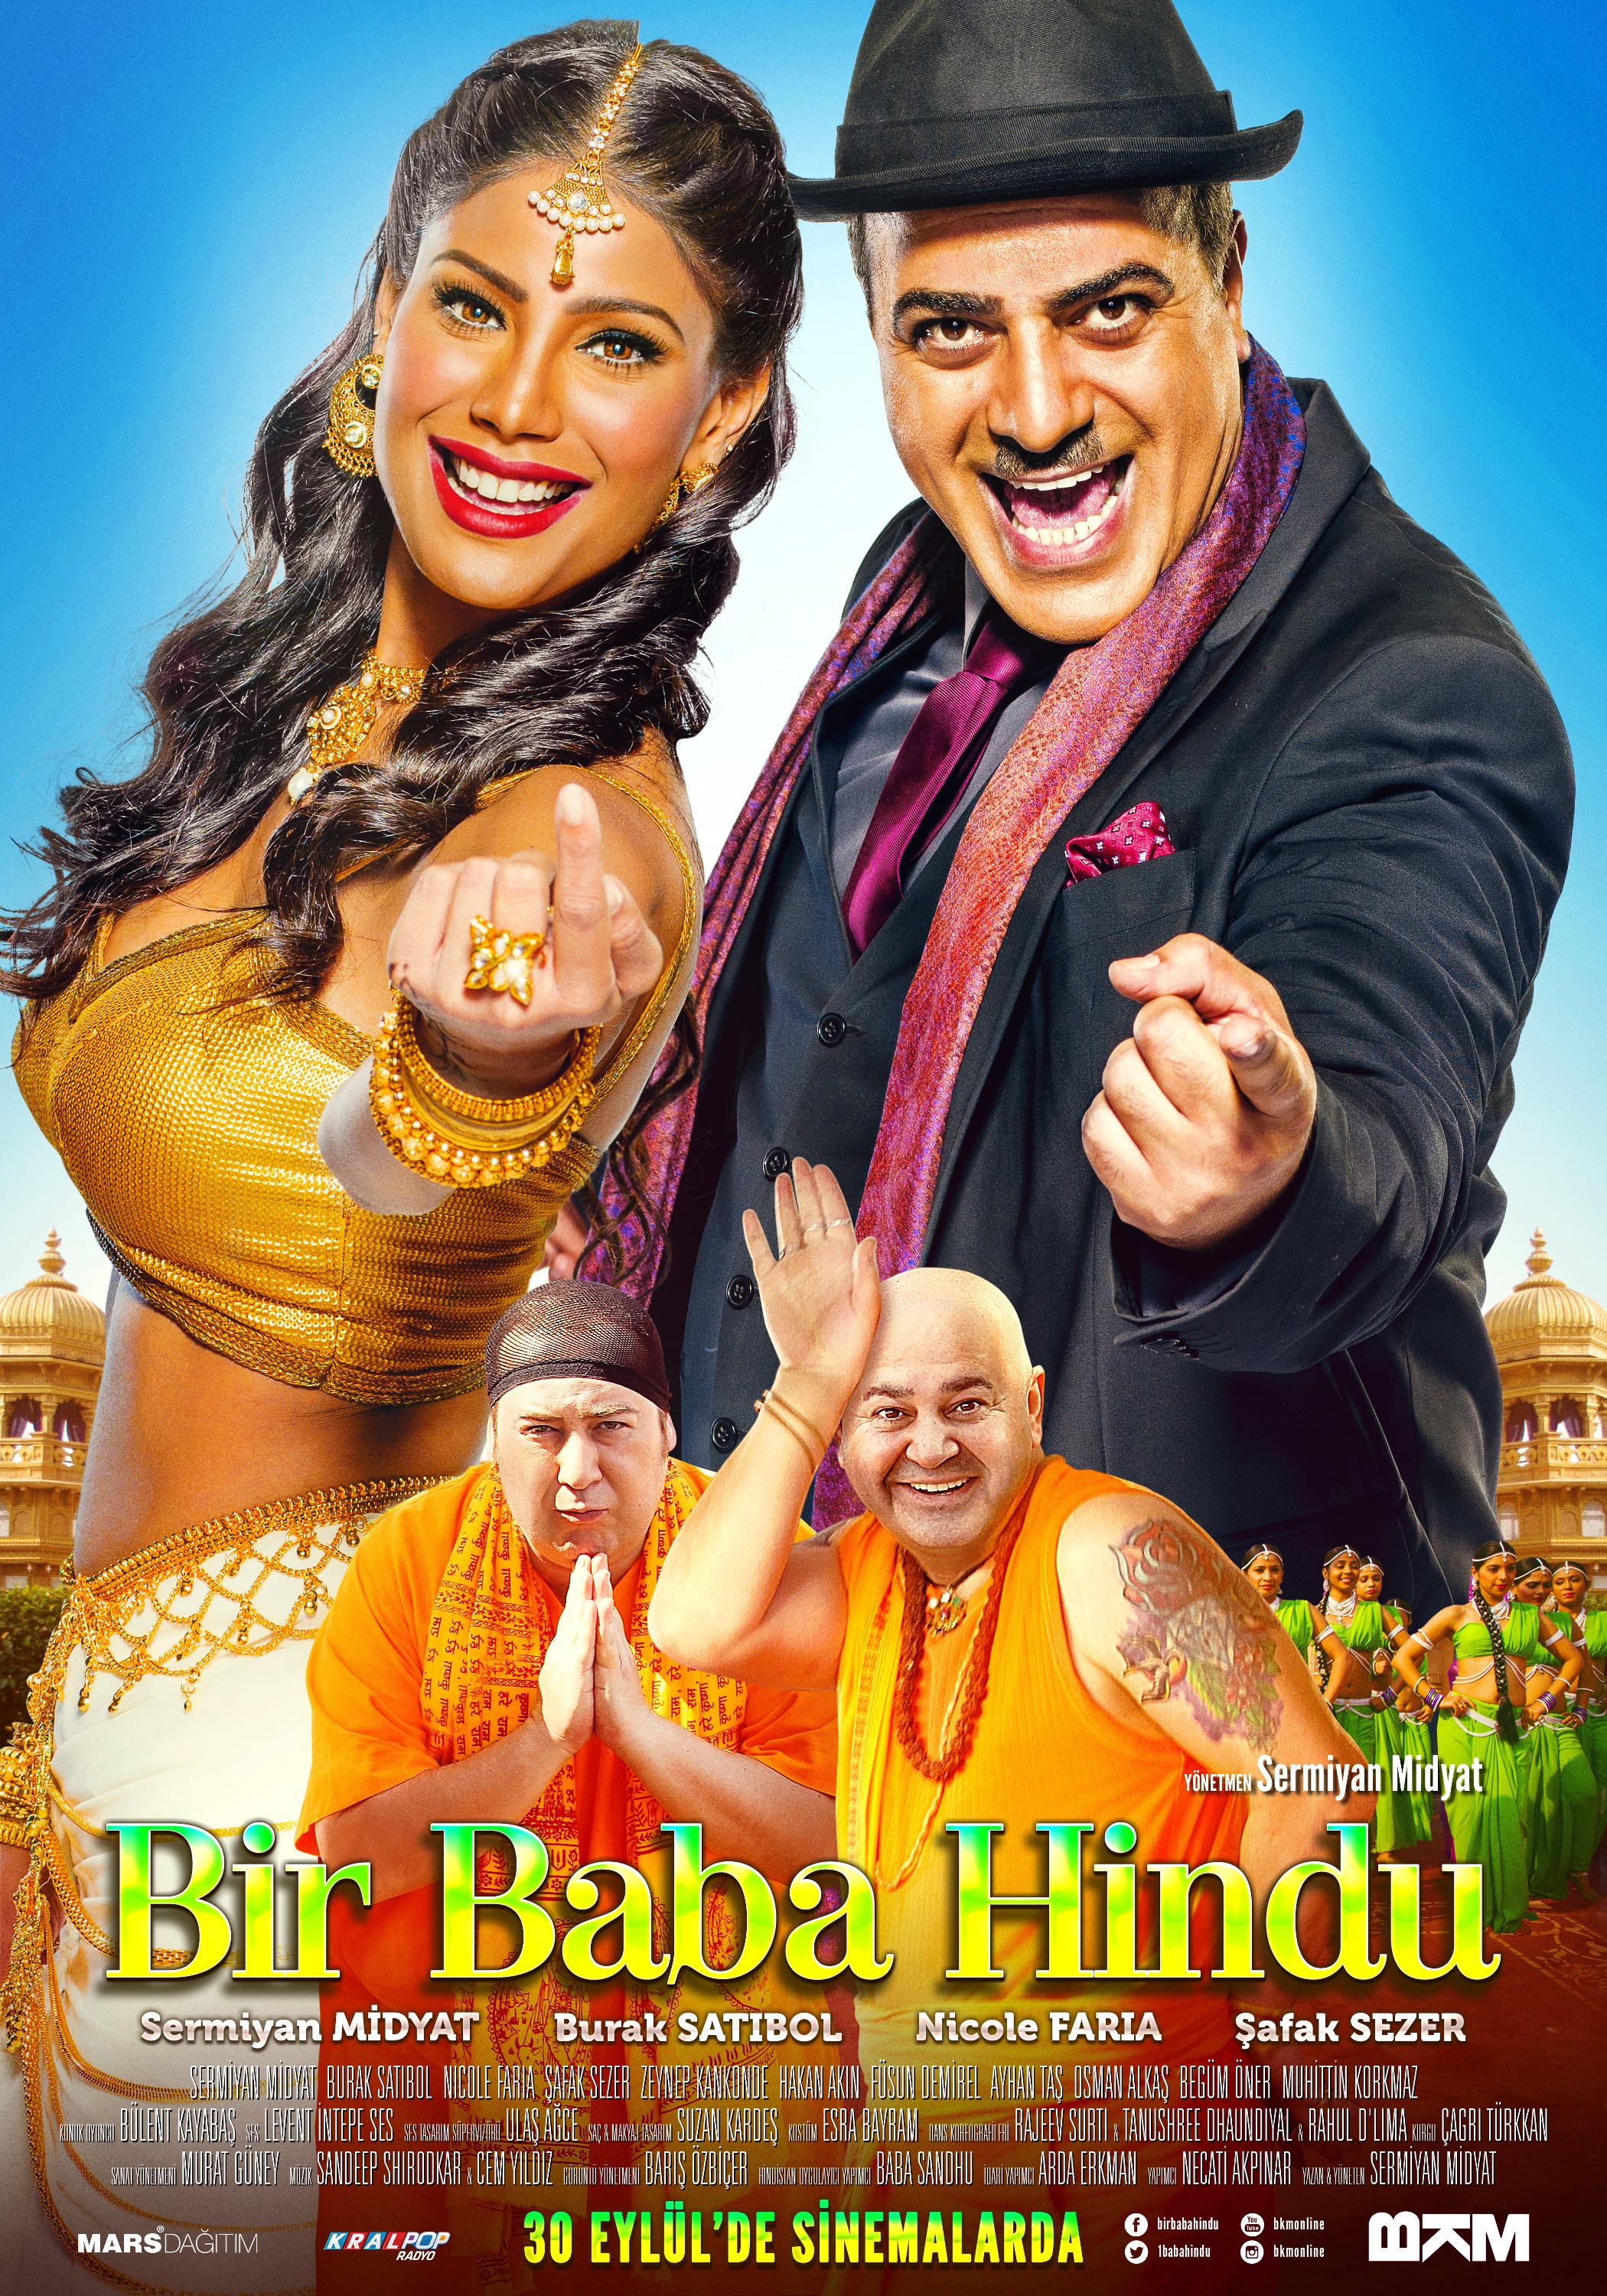 Mega Sized Movie Poster Image for Bir Baba Hindu (#1 of 2)